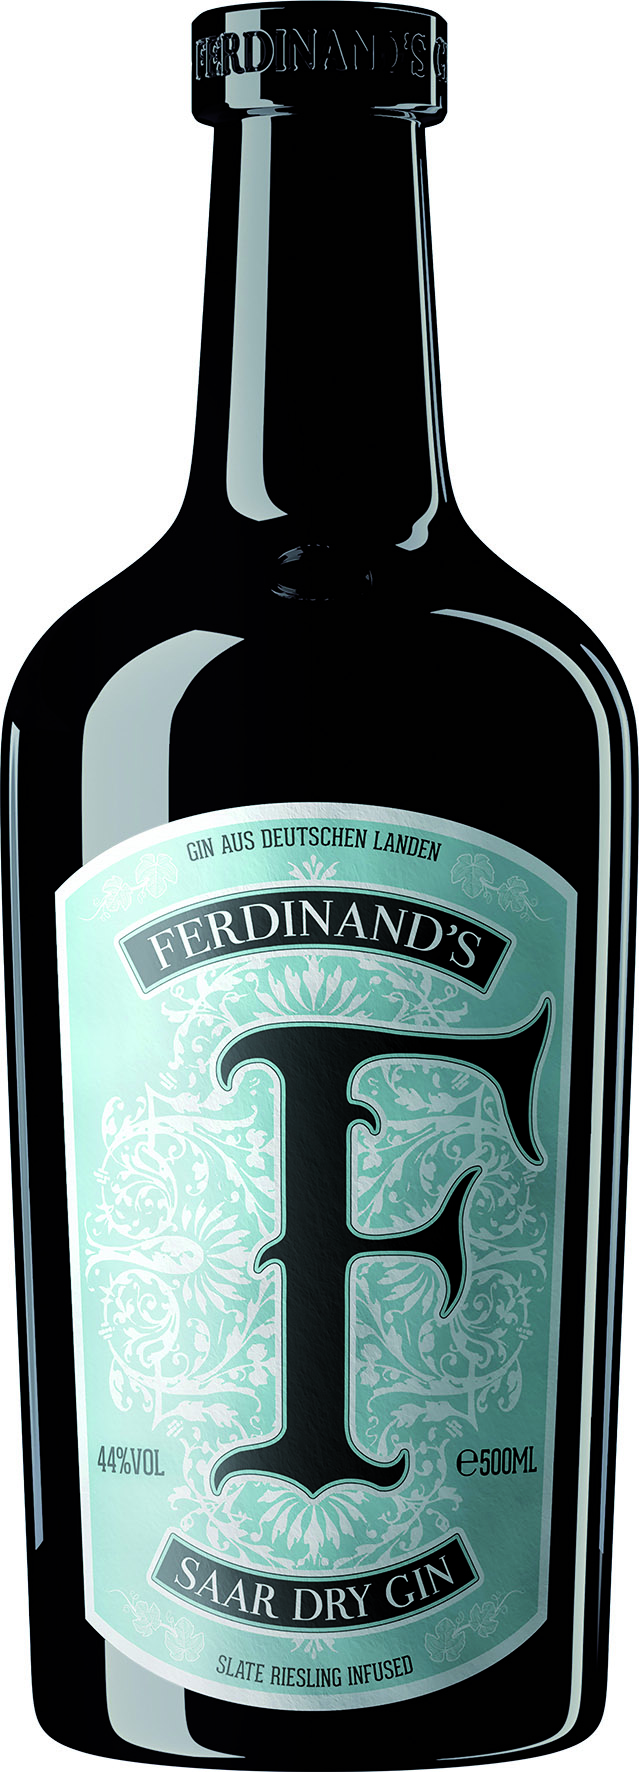 Ferdinands Saar Dry Gin Riesling infused Gin 44%vol. 0,5l